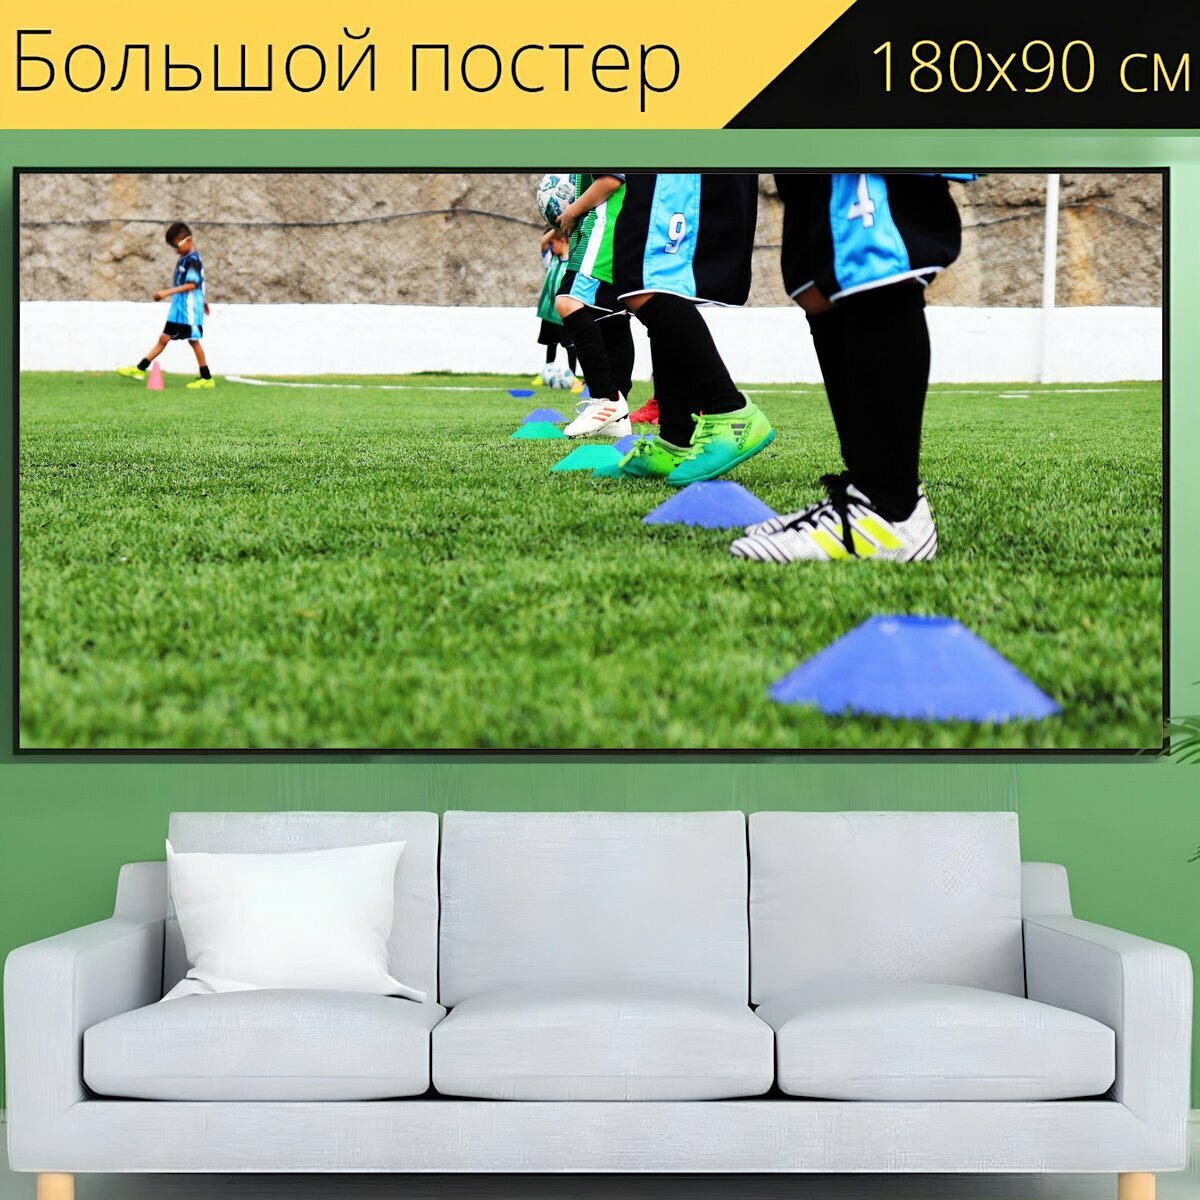 Большой постер "Футбольный, дети, футбол" 180 x 90 см. для интерьера